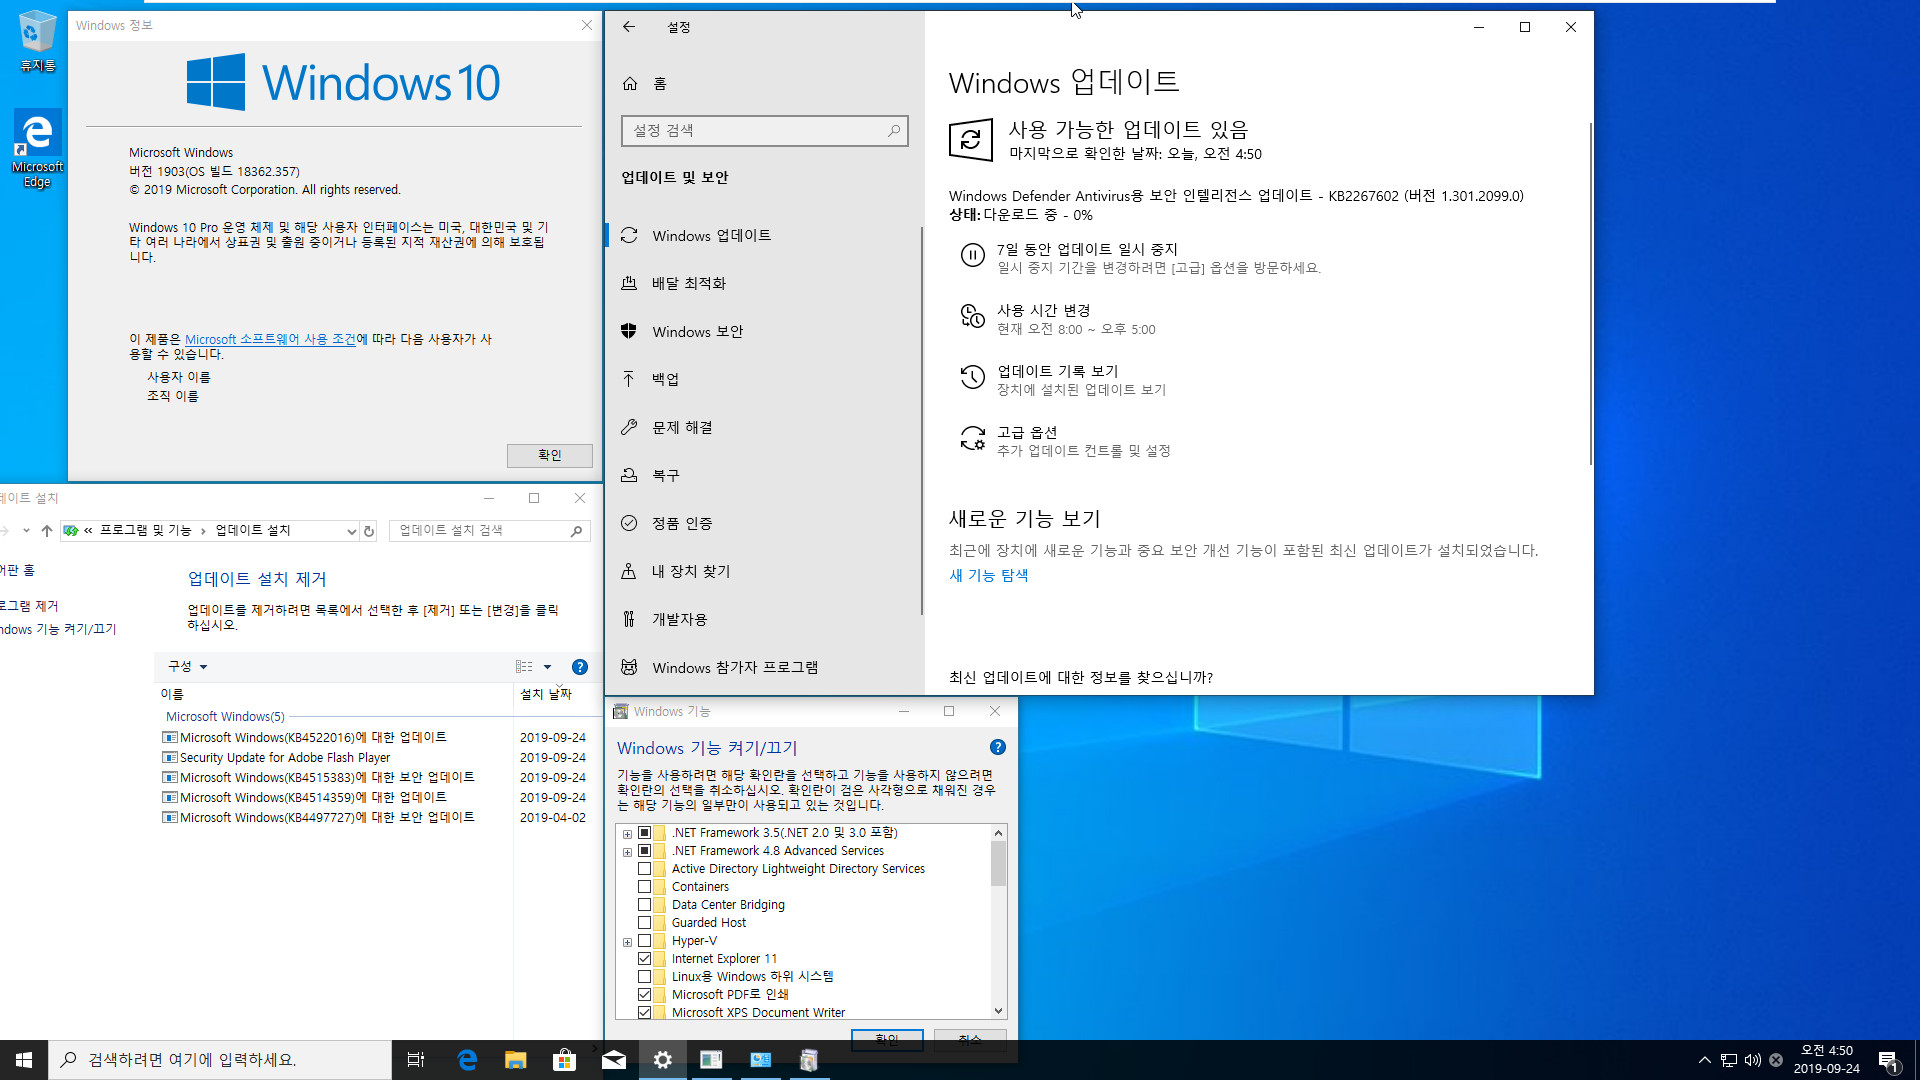 Windows 10 수시 업데이트 - Windows 10 버전 1903 누적 업데이트 KB4522016 (OS 빌드 18362.357) [2019-09-23 일자] 나왔네요 - 통합중 입니다 - 64비트 확인 2019-09-24_045049.jpg